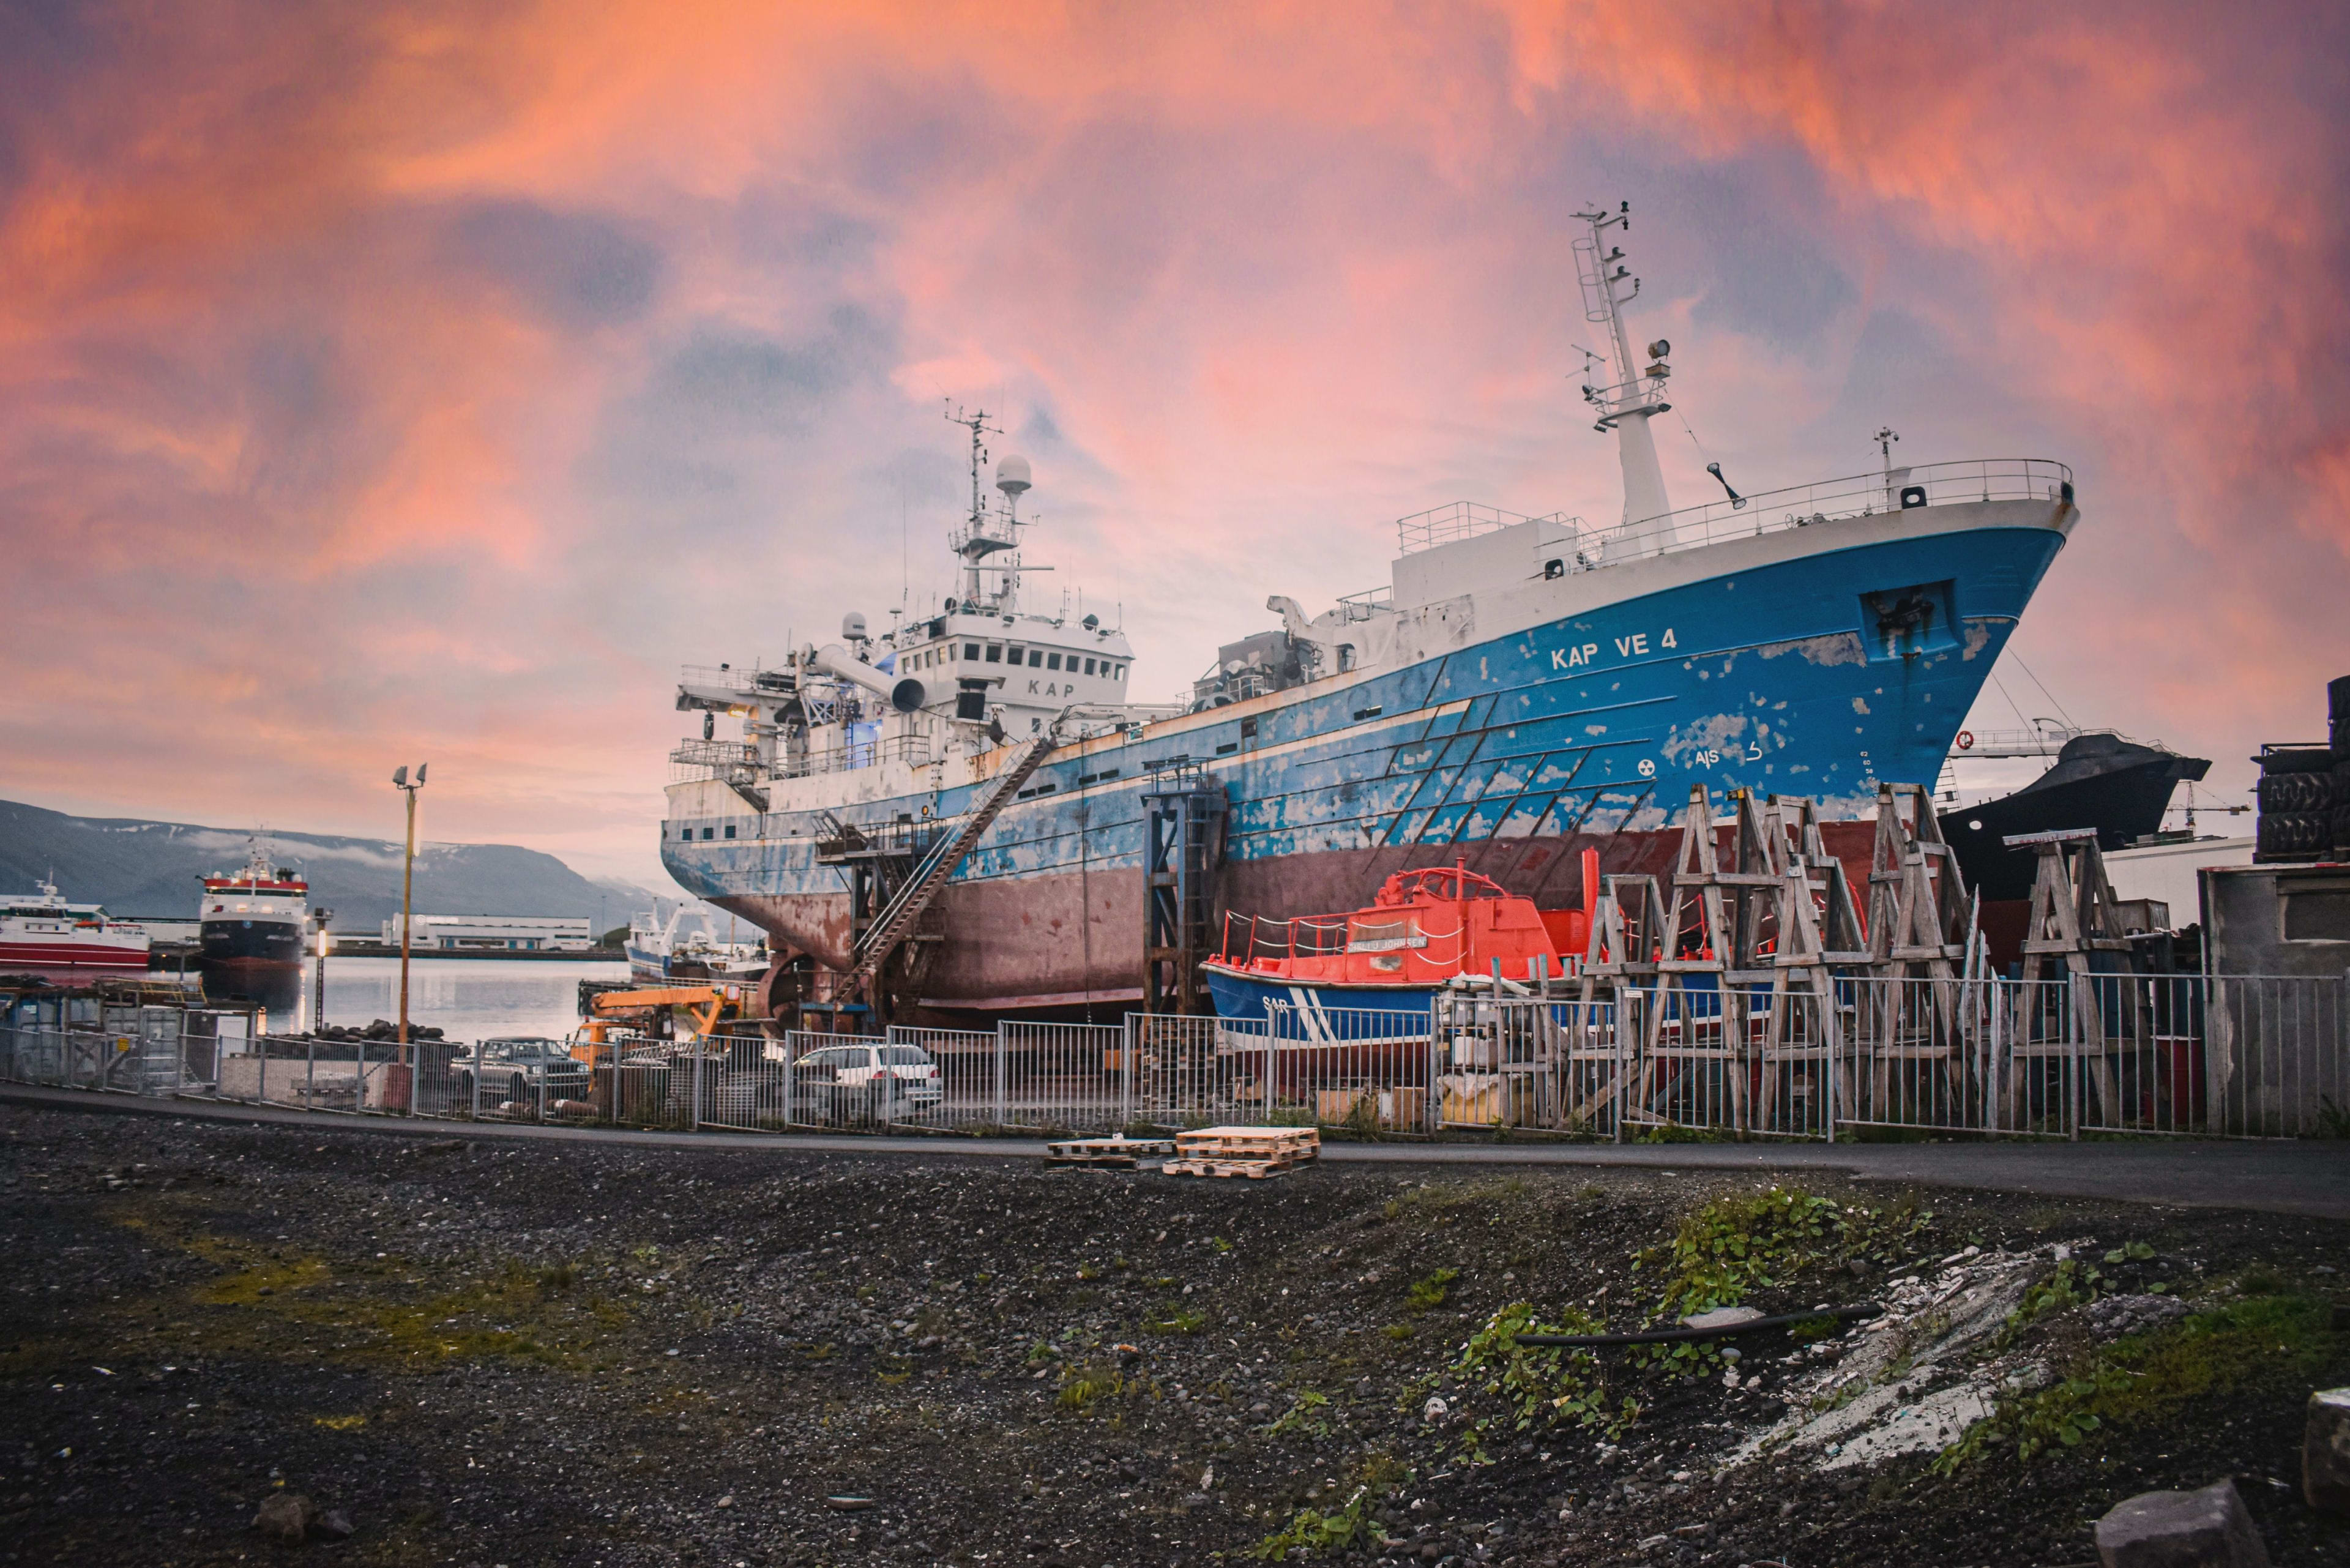 Ships docked in Reykjavik